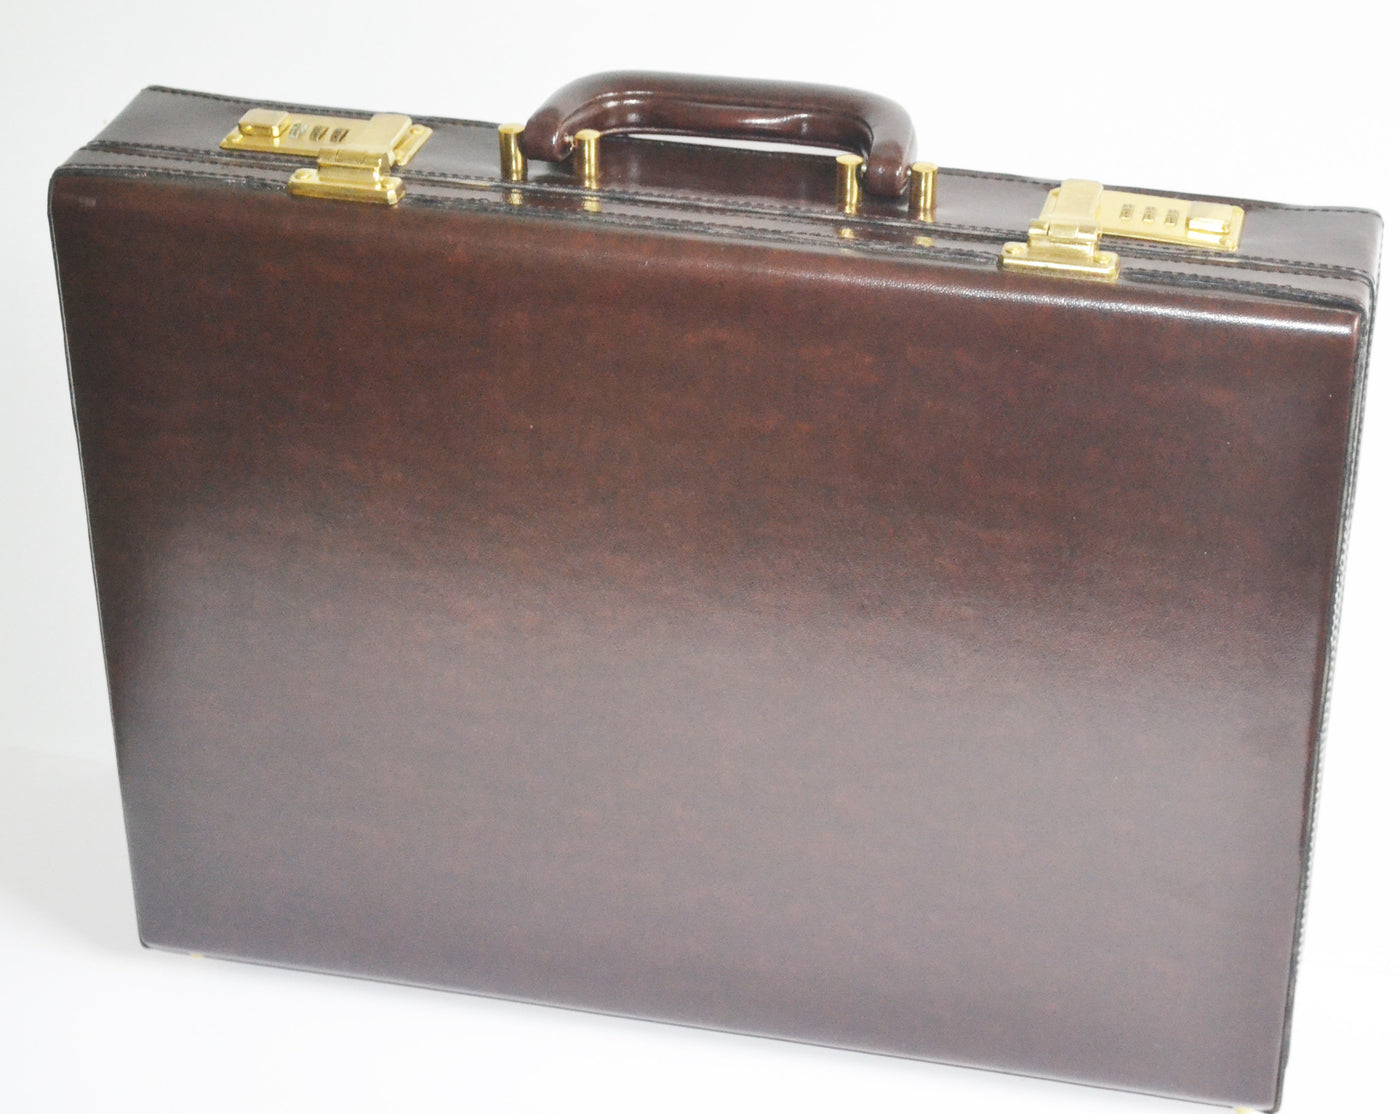 Vintage Halston Leather Attache Briefcase